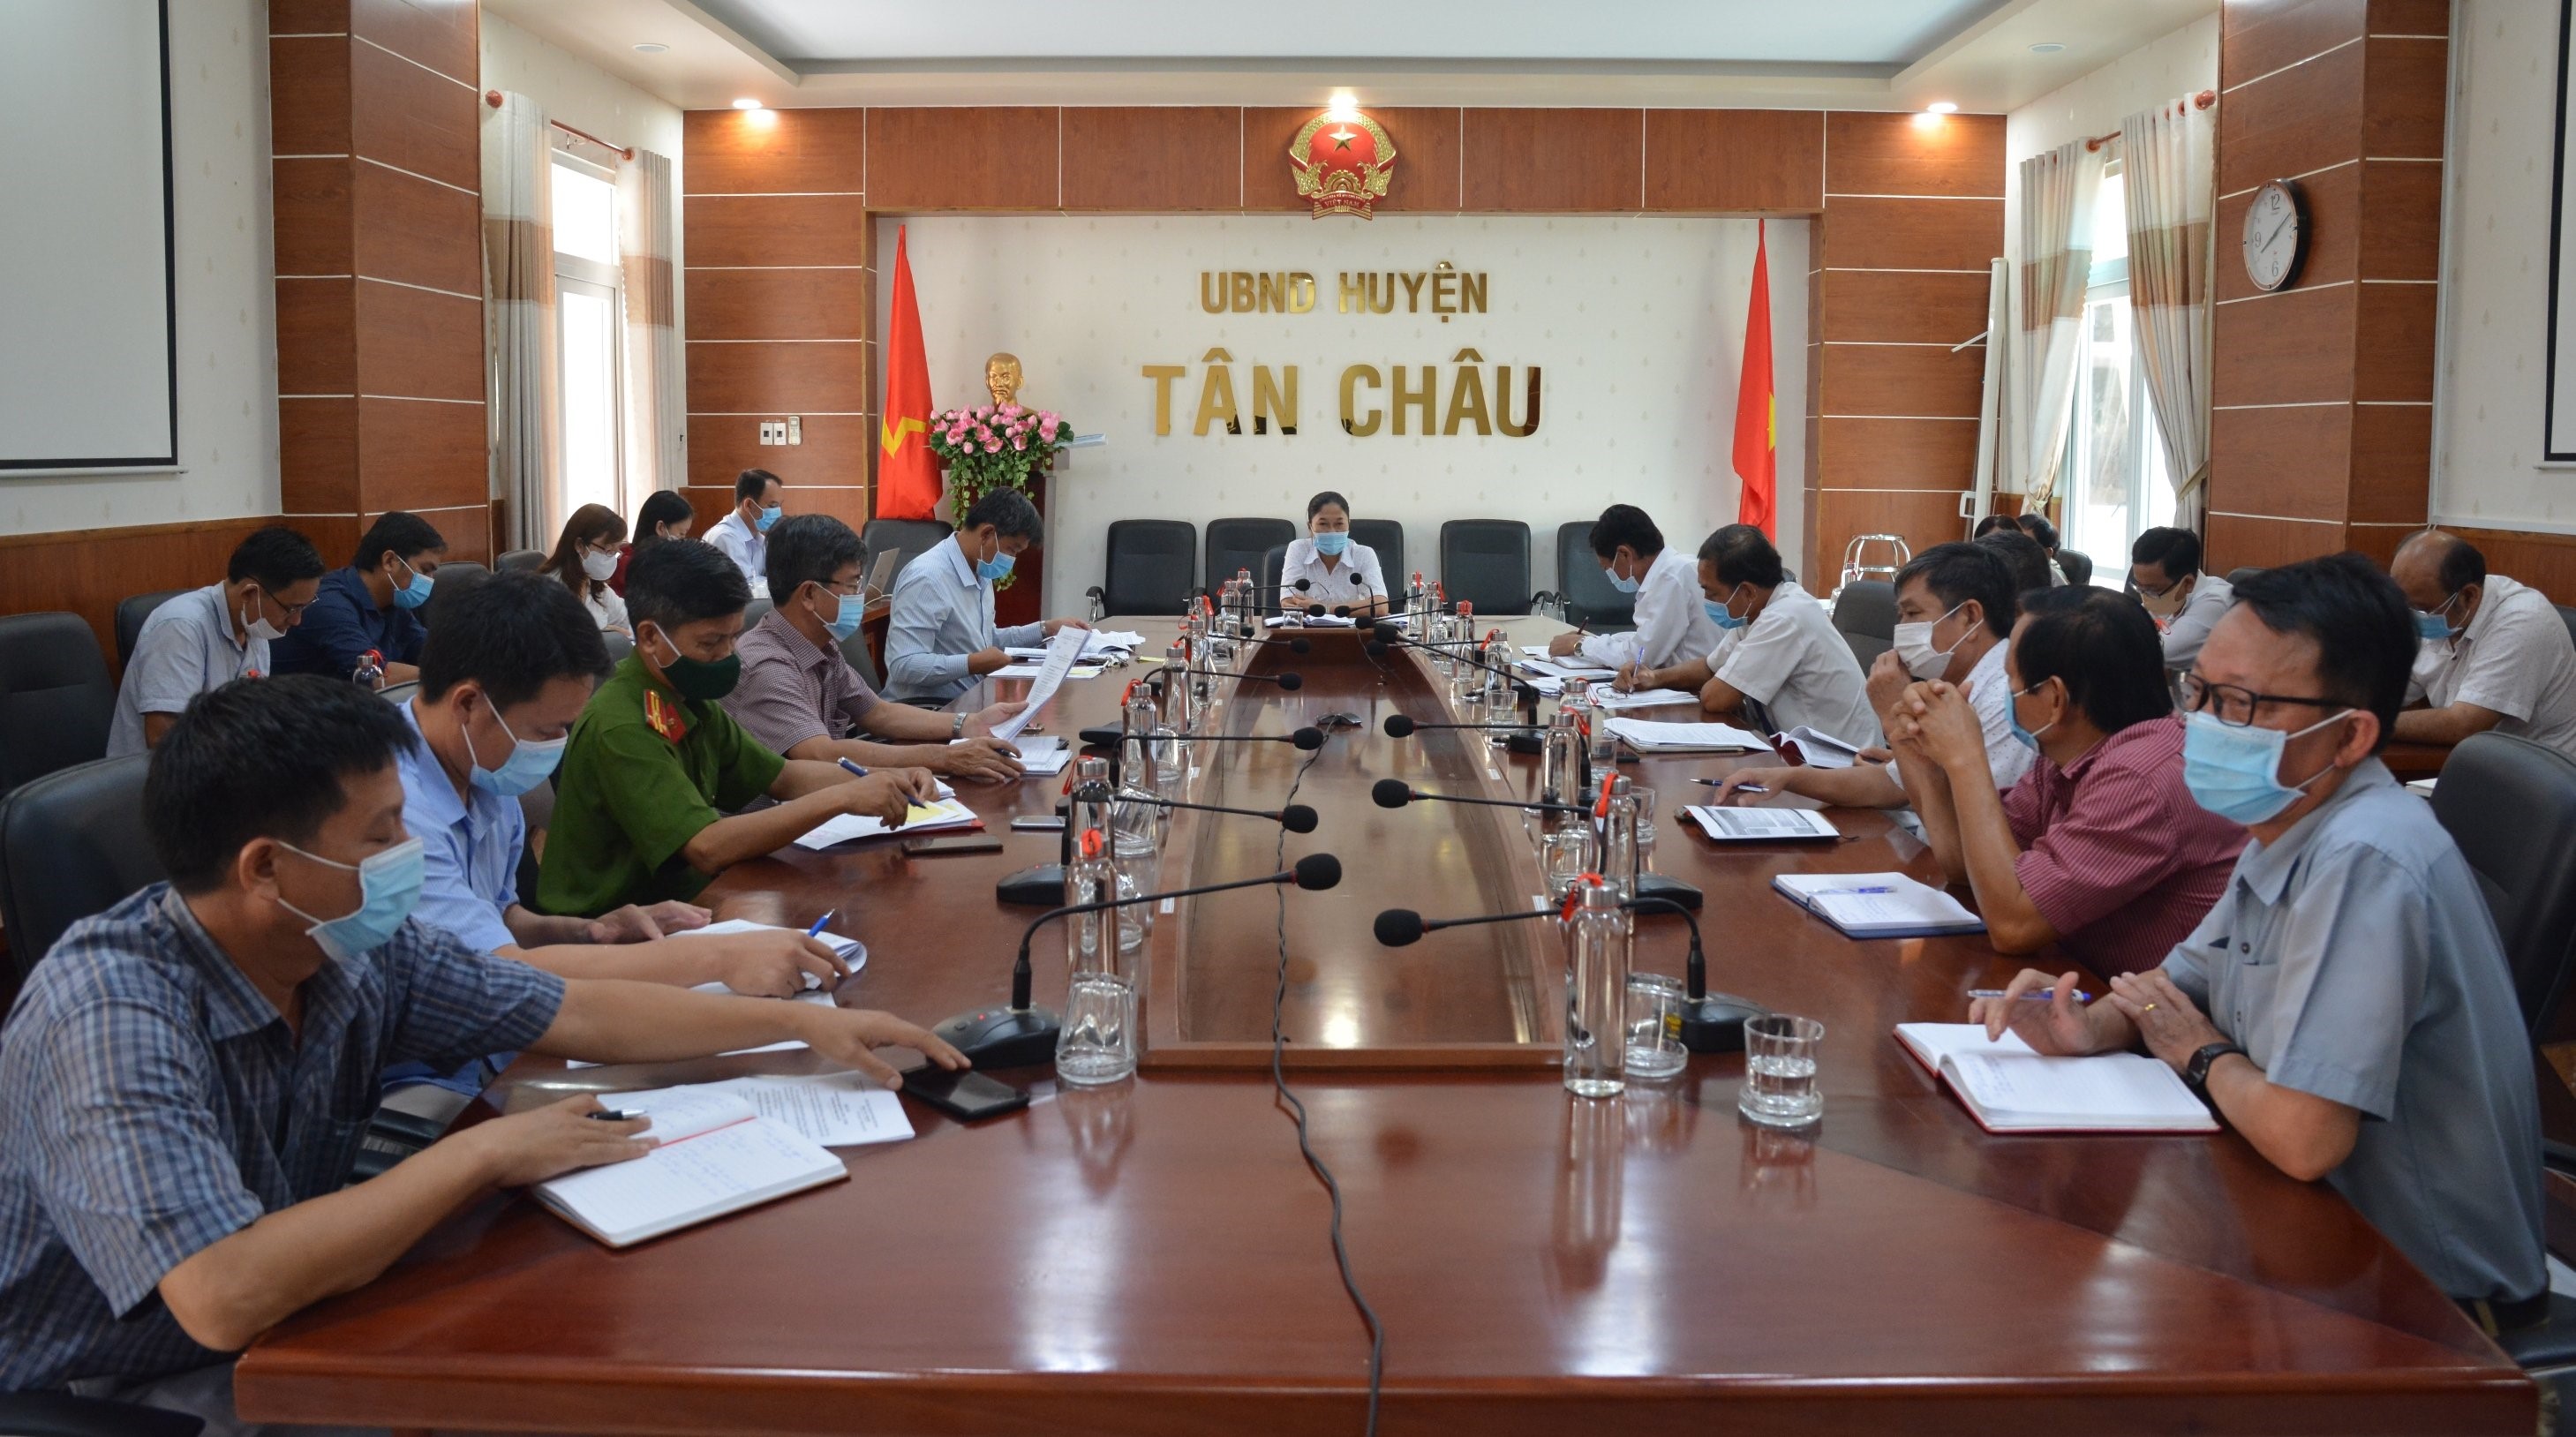 UBND huyện Tân Châu họp BCĐ thu ngân sách 5 tháng đầu năm 2021; Nhiệm vụ, giải pháp thực hiện công tác thu NSNN 6 tháng đầu năm 2021